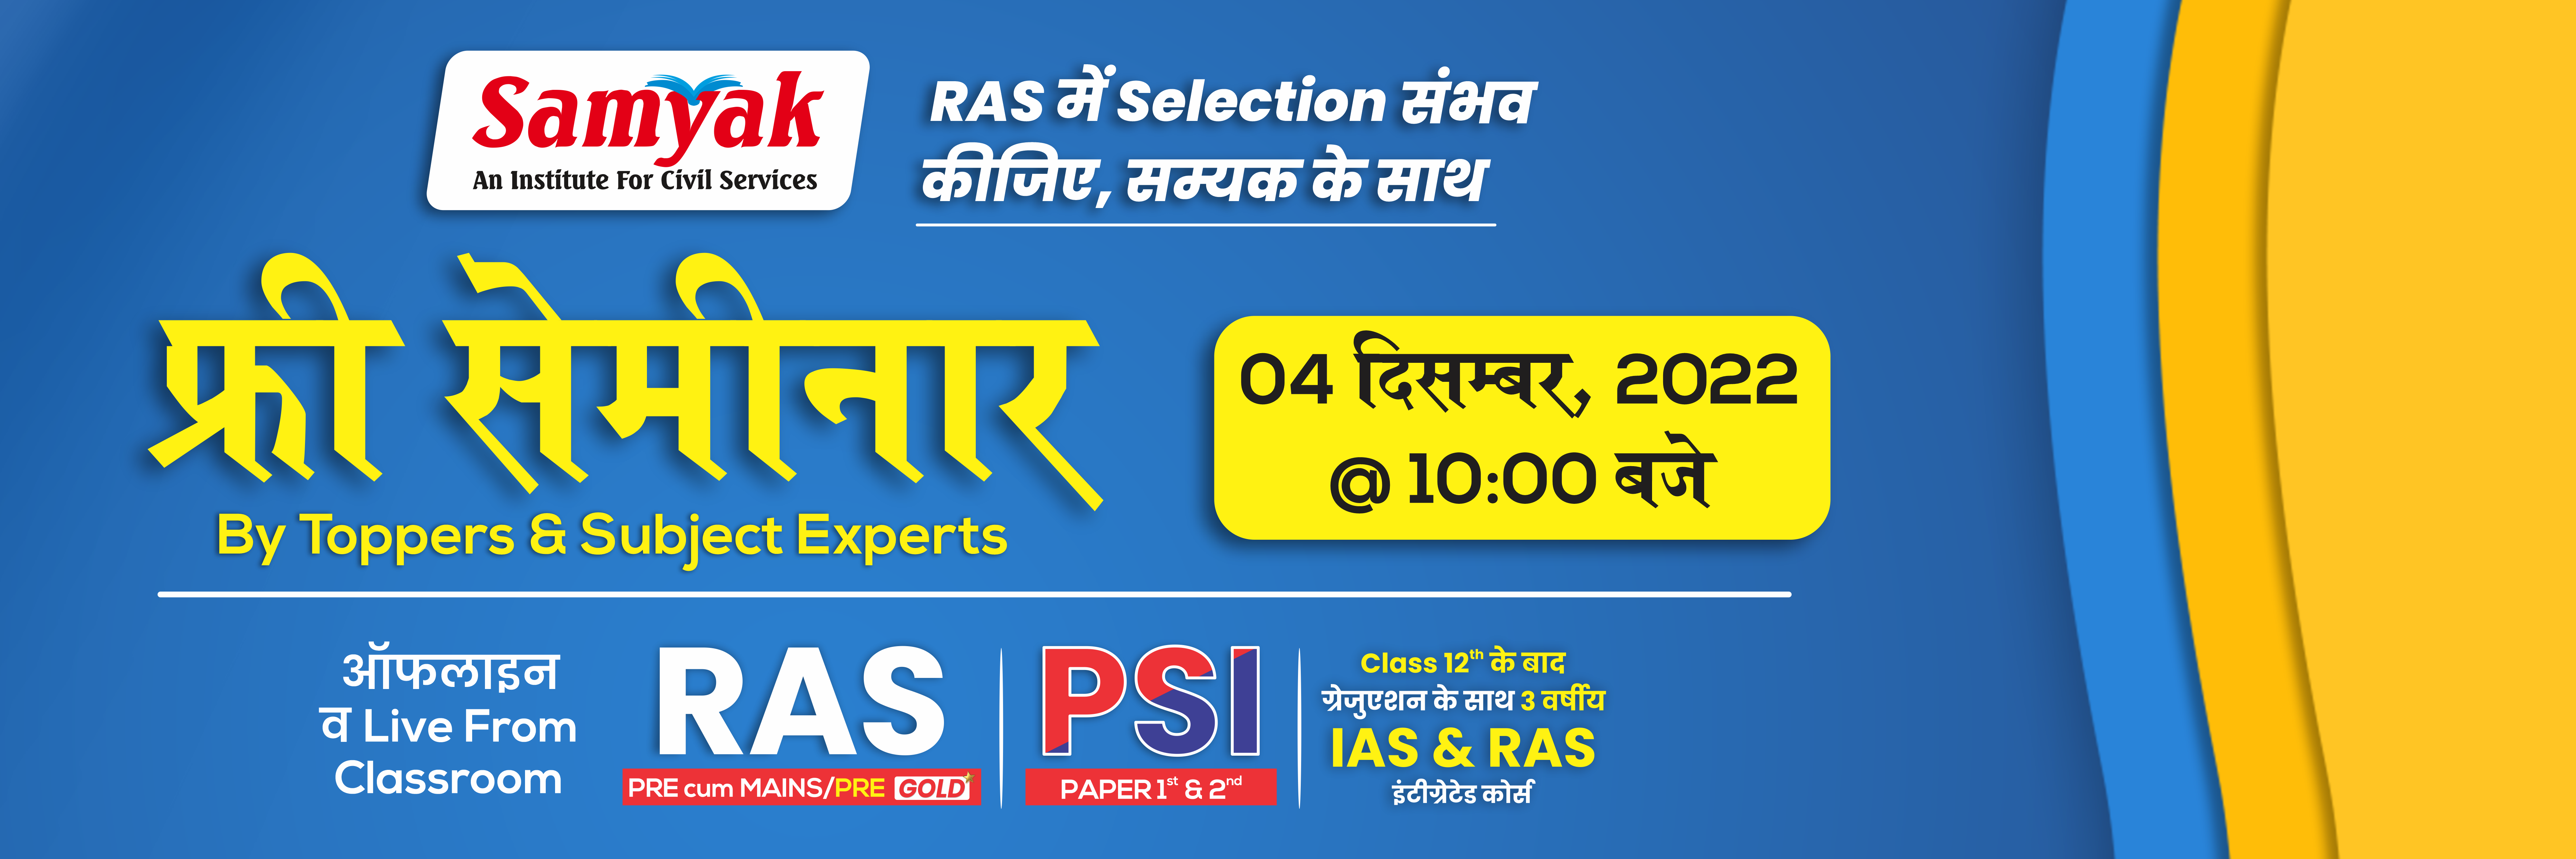 Samyak Free Seminar, 4 December 2022 @ 10:00 AM, RAS Pre Cum Mains, PSI, Integrated Course for IAS & RAS